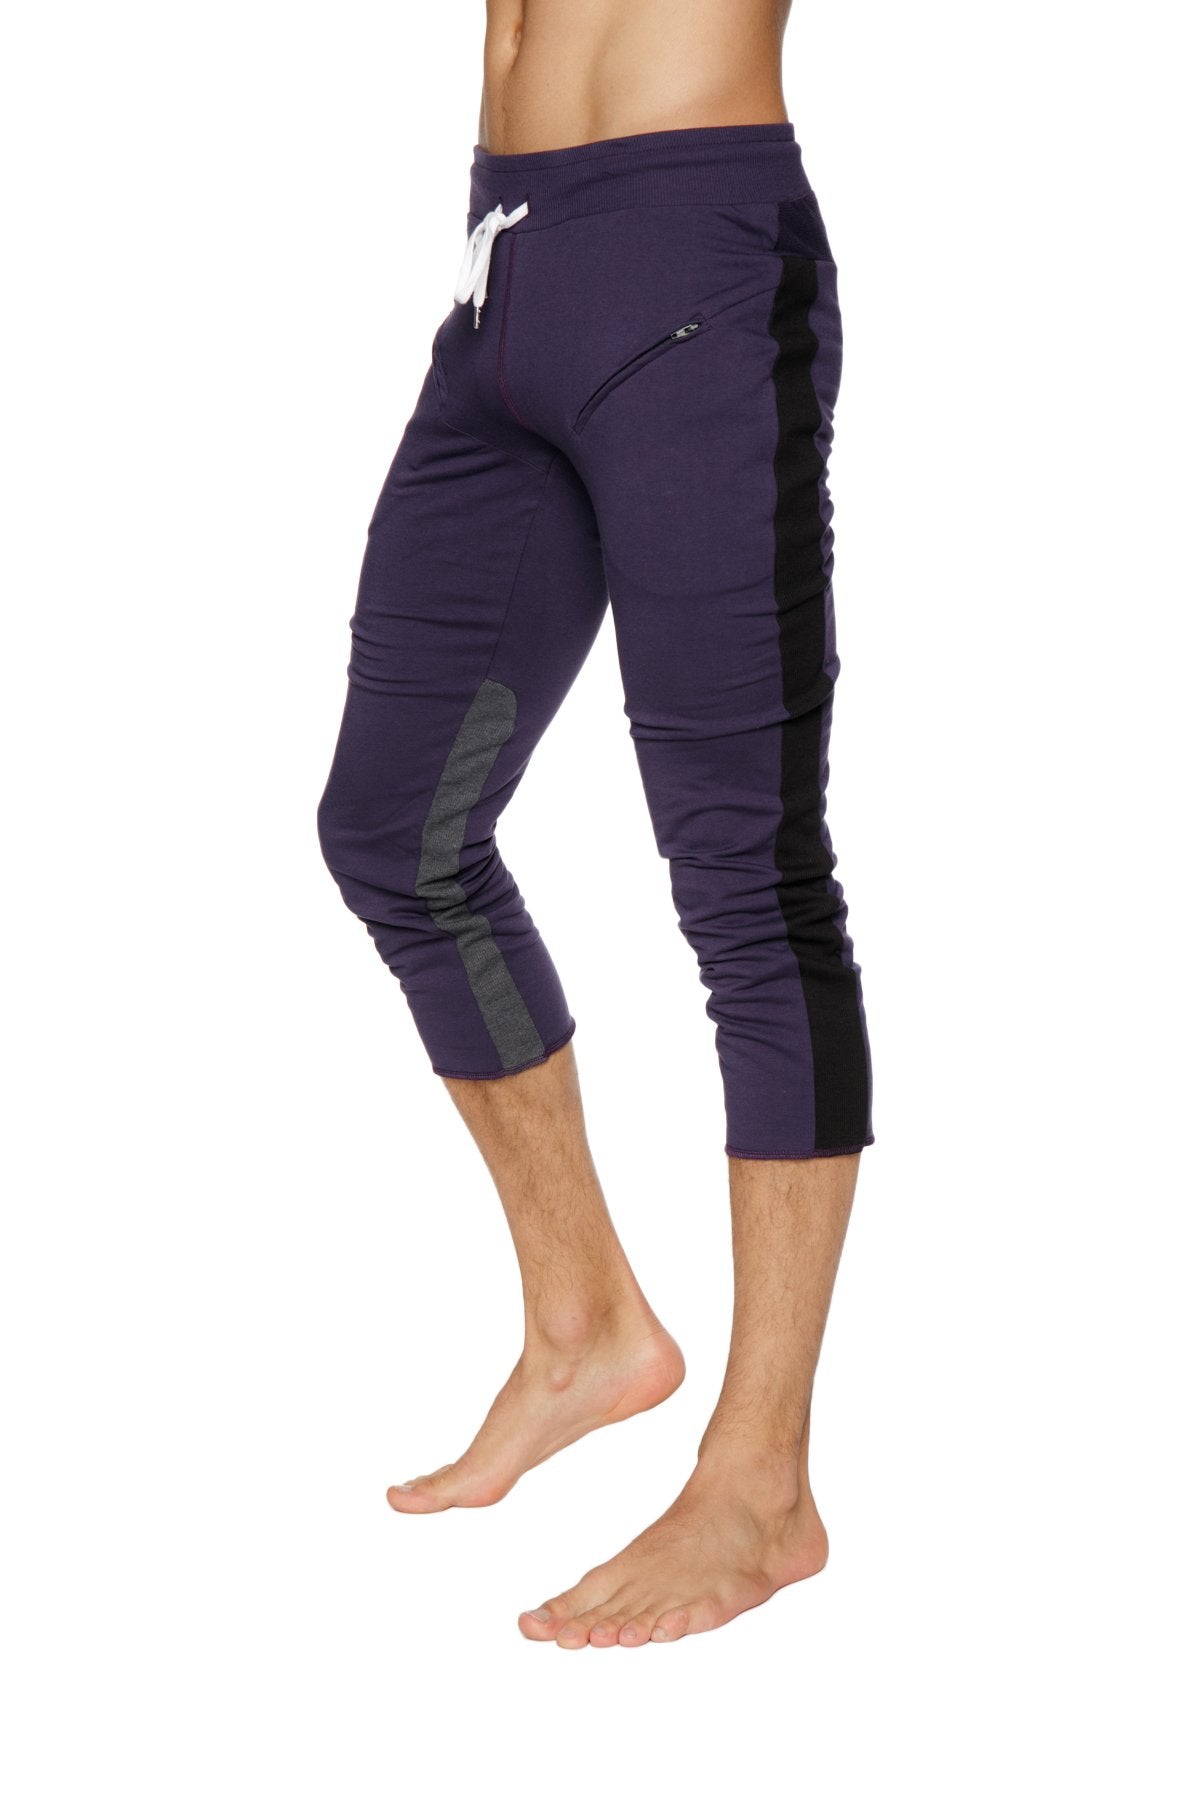 Mens 4/5 Zipper Pocket Capri Yoga Pants (Eggplant w/Black & Charcoal) –  4-rth